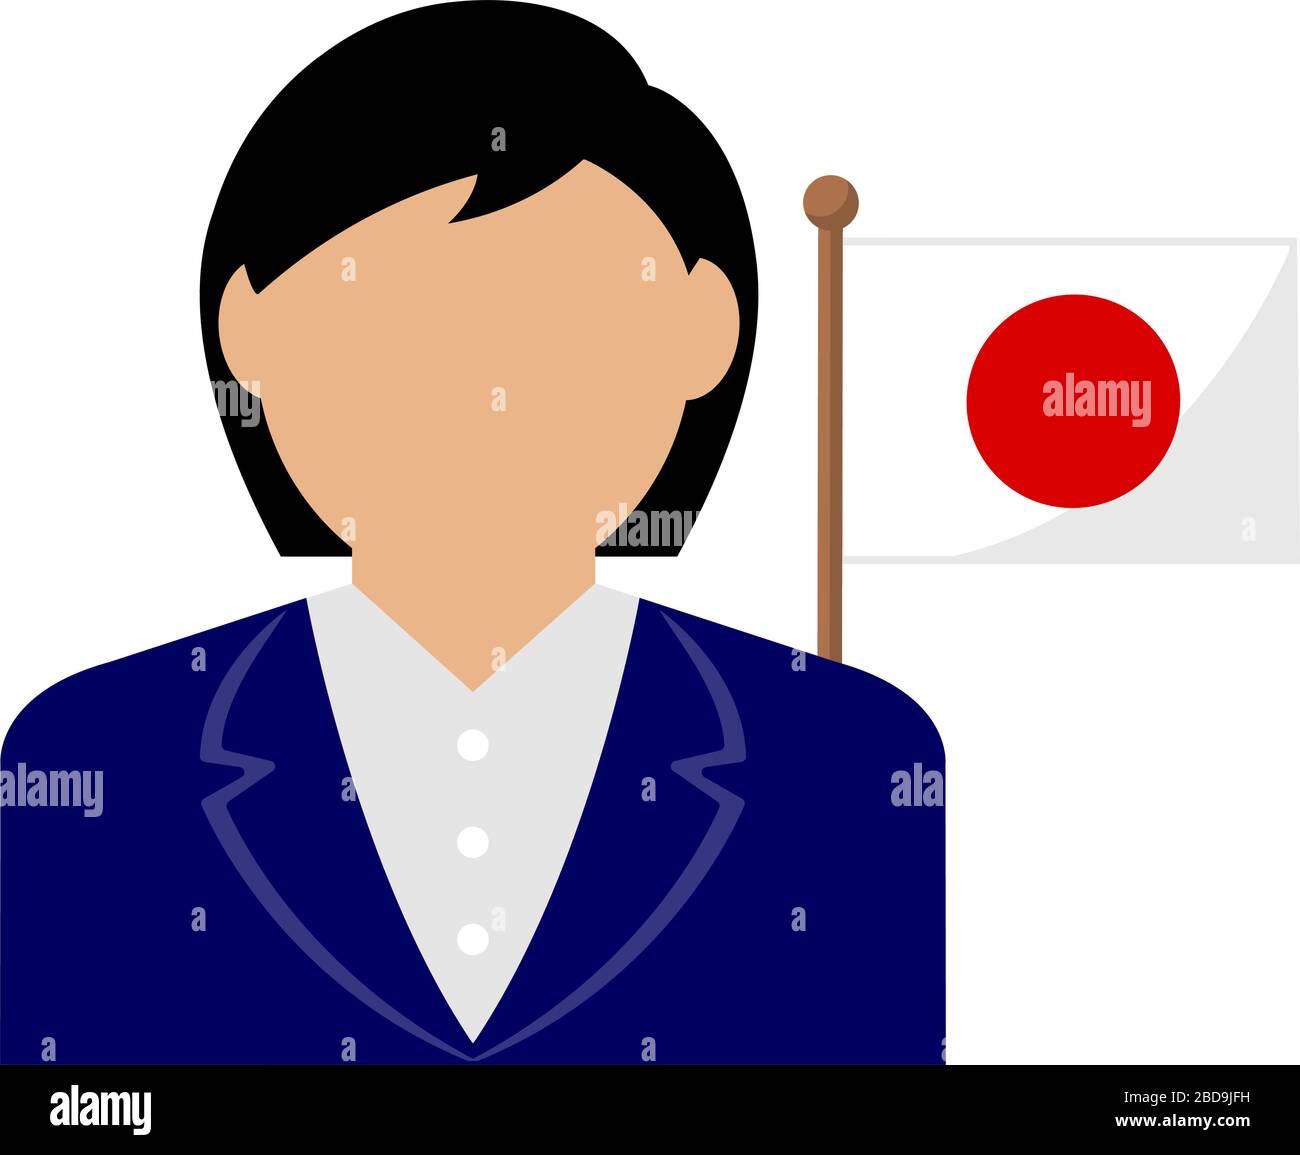 Gesichtslose Geschäftsfrau mit Nationalflaggen / Japan .Flat Vector Illustration. Stock Vektor